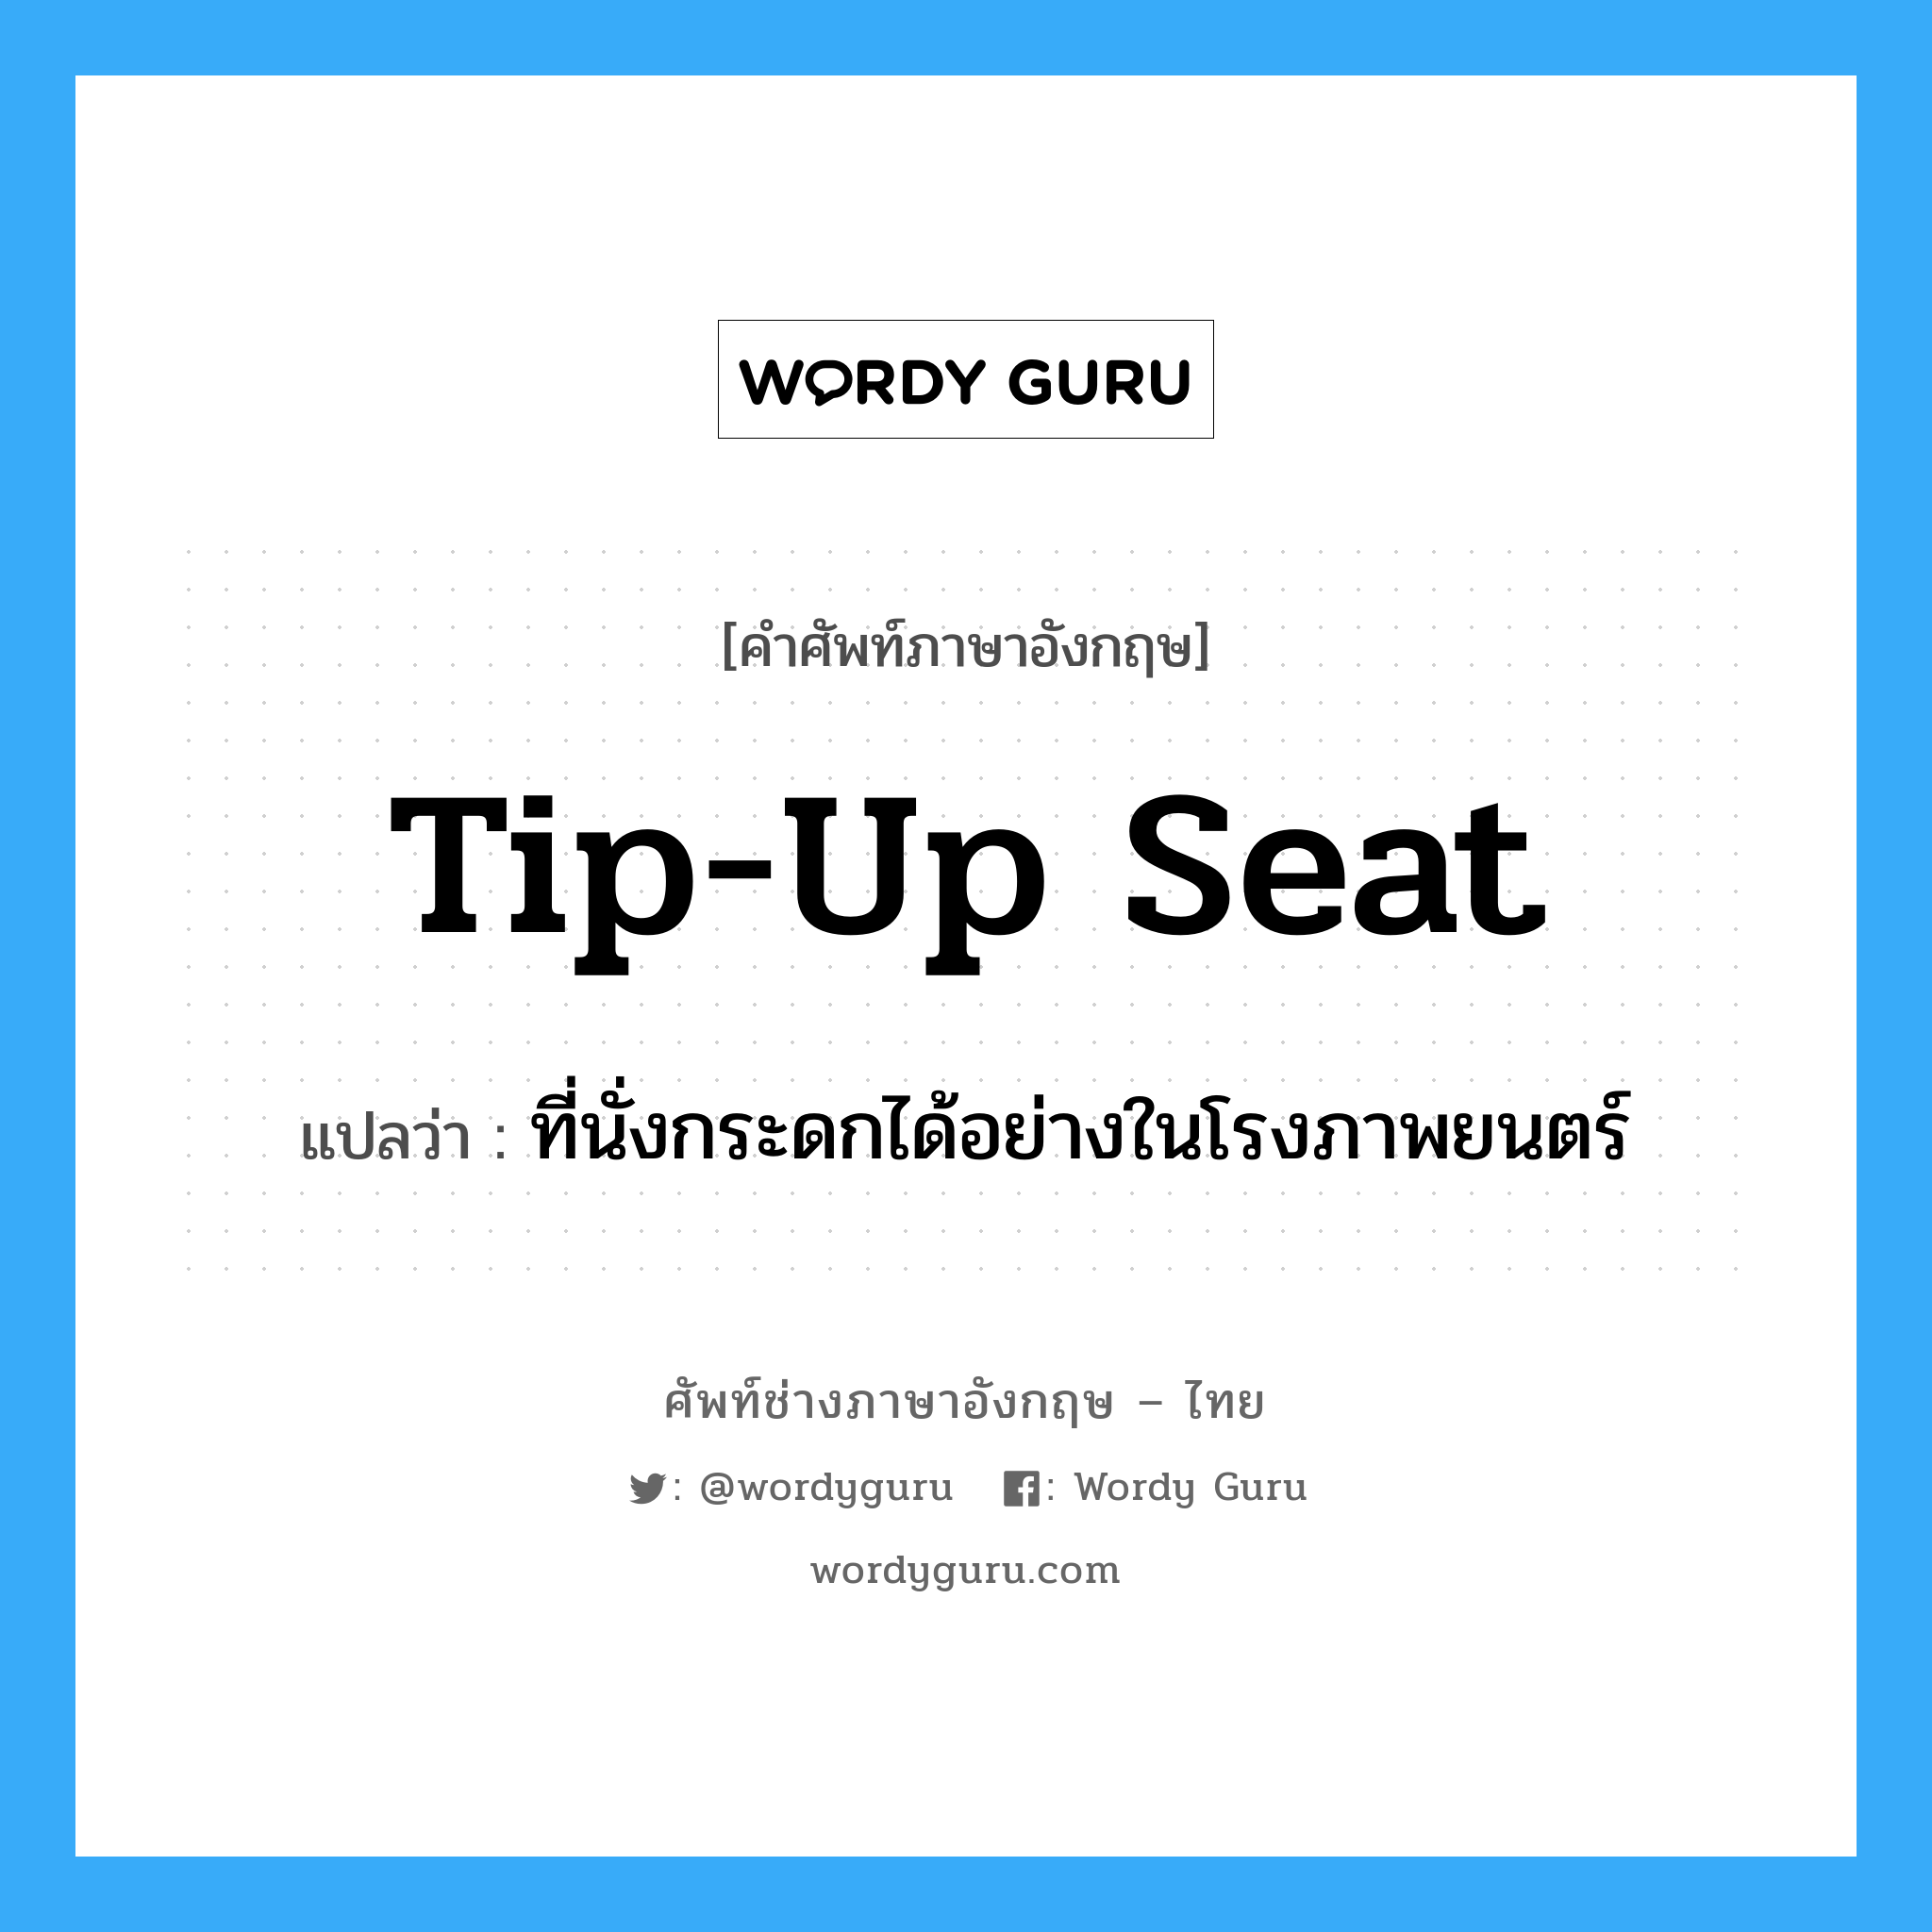 tip-up seat แปลว่า?, คำศัพท์ช่างภาษาอังกฤษ - ไทย tip-up seat คำศัพท์ภาษาอังกฤษ tip-up seat แปลว่า ที่นั่งกระดกได้อย่างในโรงภาพยนตร์